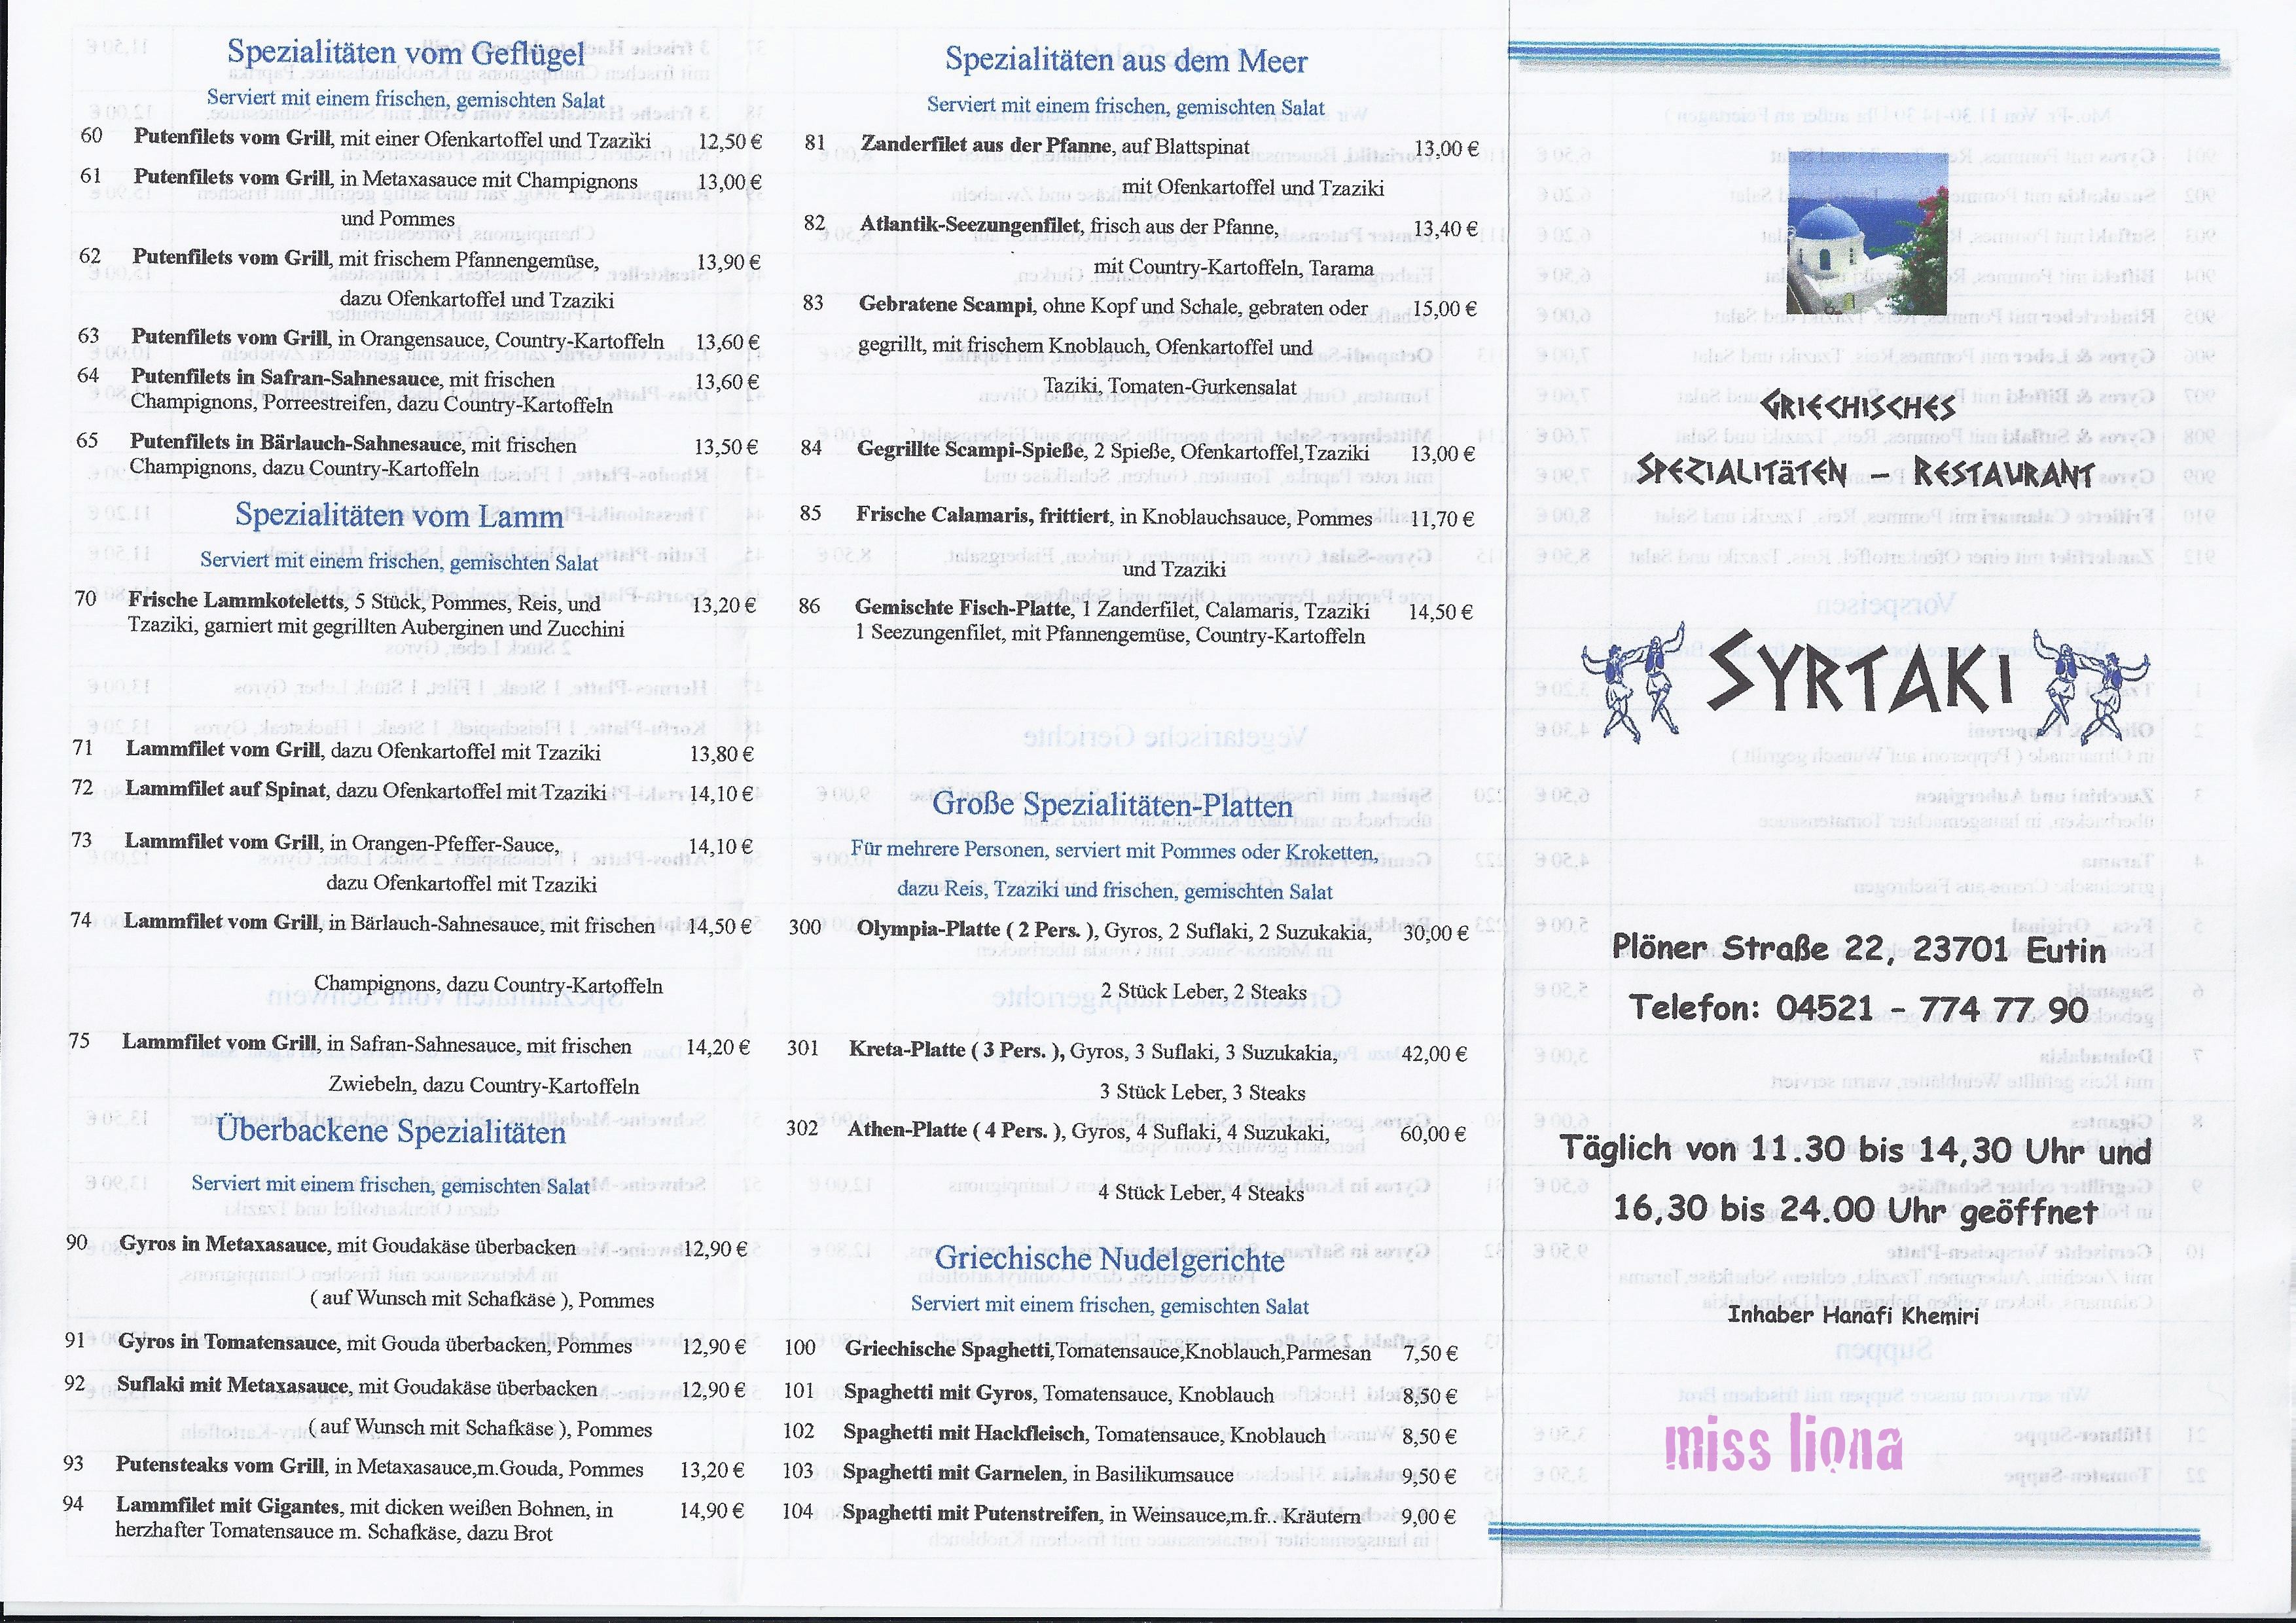 Bild 3 Gaststätte Syrtaki in Eutin